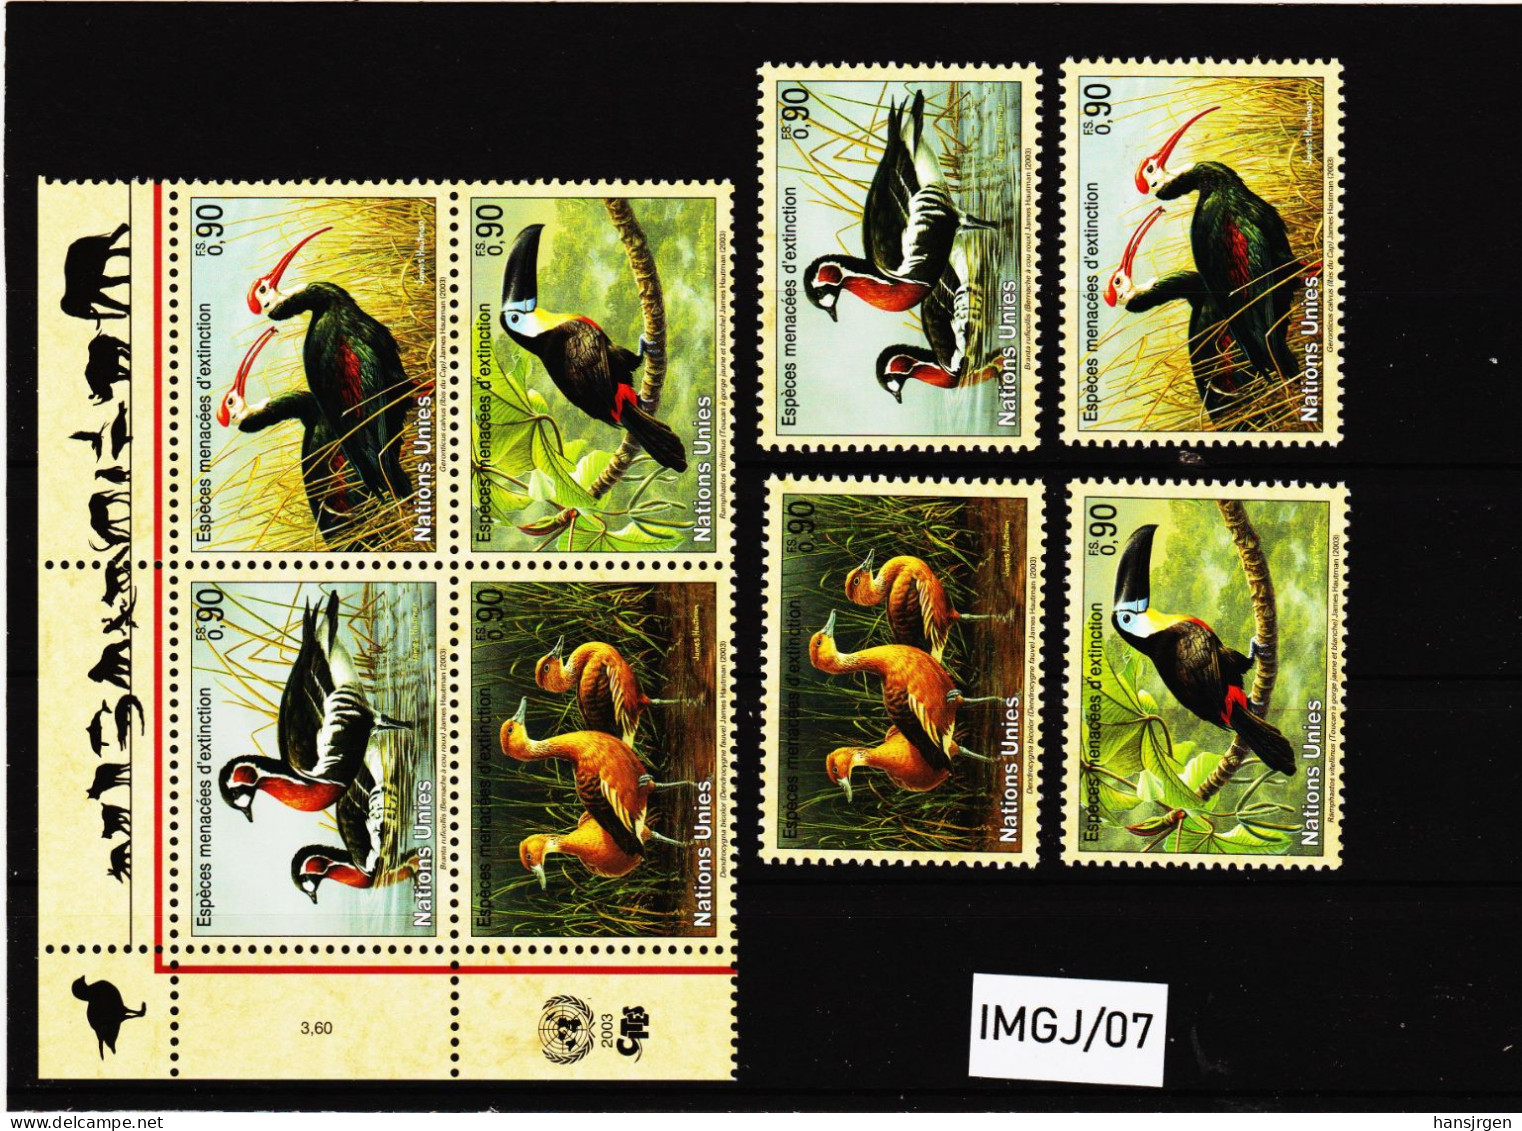 IMGJ/07 UNO GENF 2003 MICHL  466/69  Postfrisch ** SIEHE ABBILDUNG - Unused Stamps